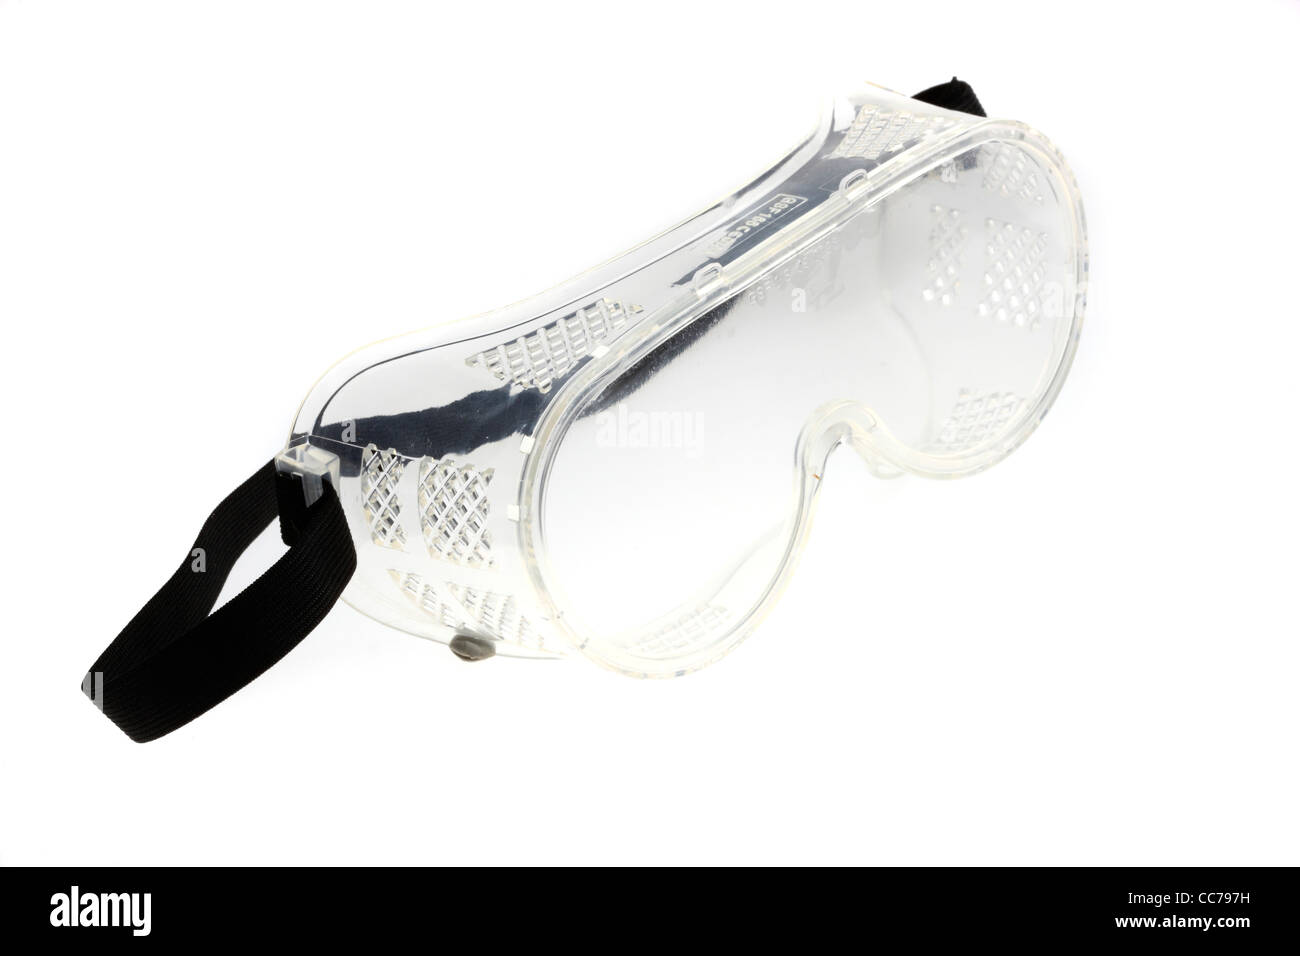 Les équipements de protection individuelle, lunettes de sécurité, lunettes de sécurité, paire de lunettes. Banque D'Images